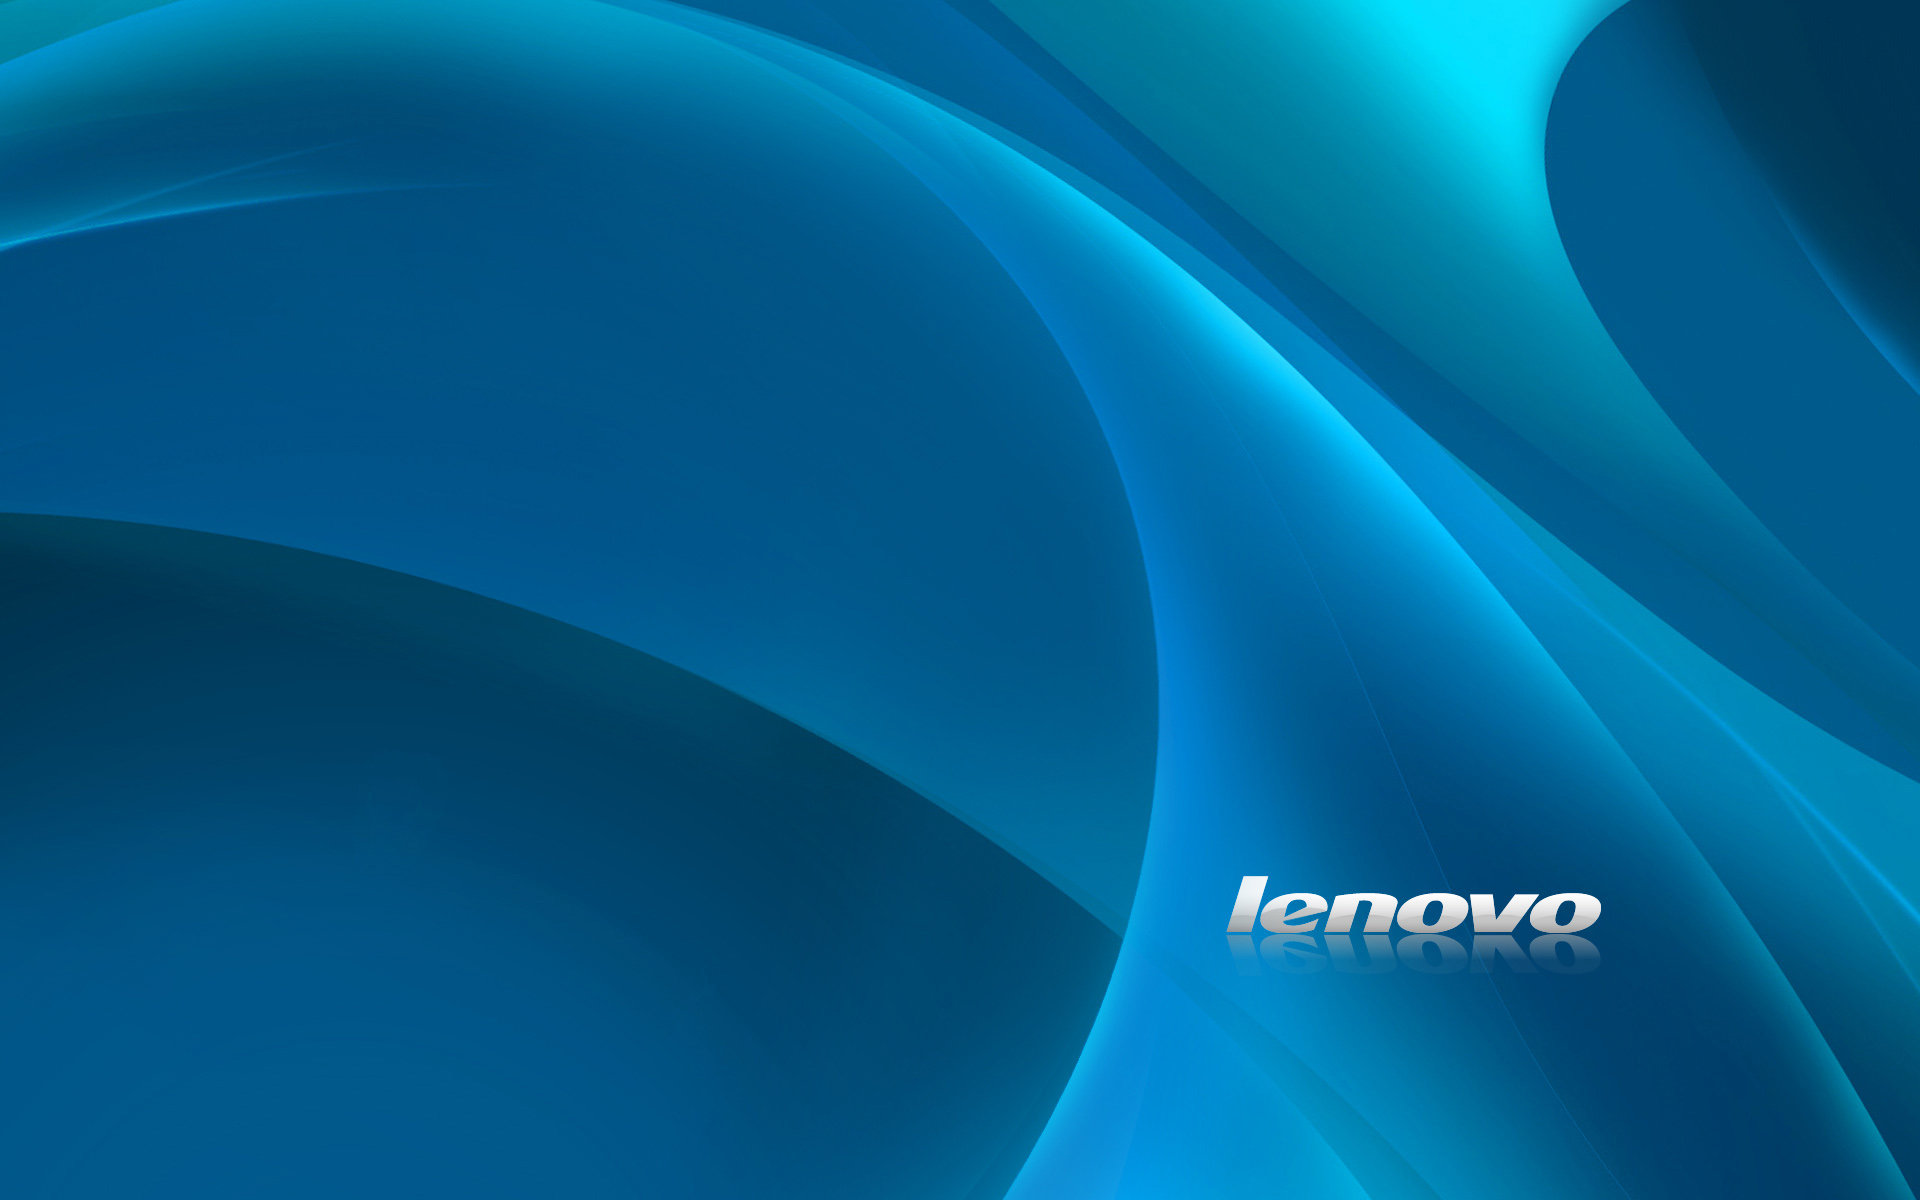 temas de fondo de pantalla de lenovo,azul,agua,turquesa,azul eléctrico,diseño